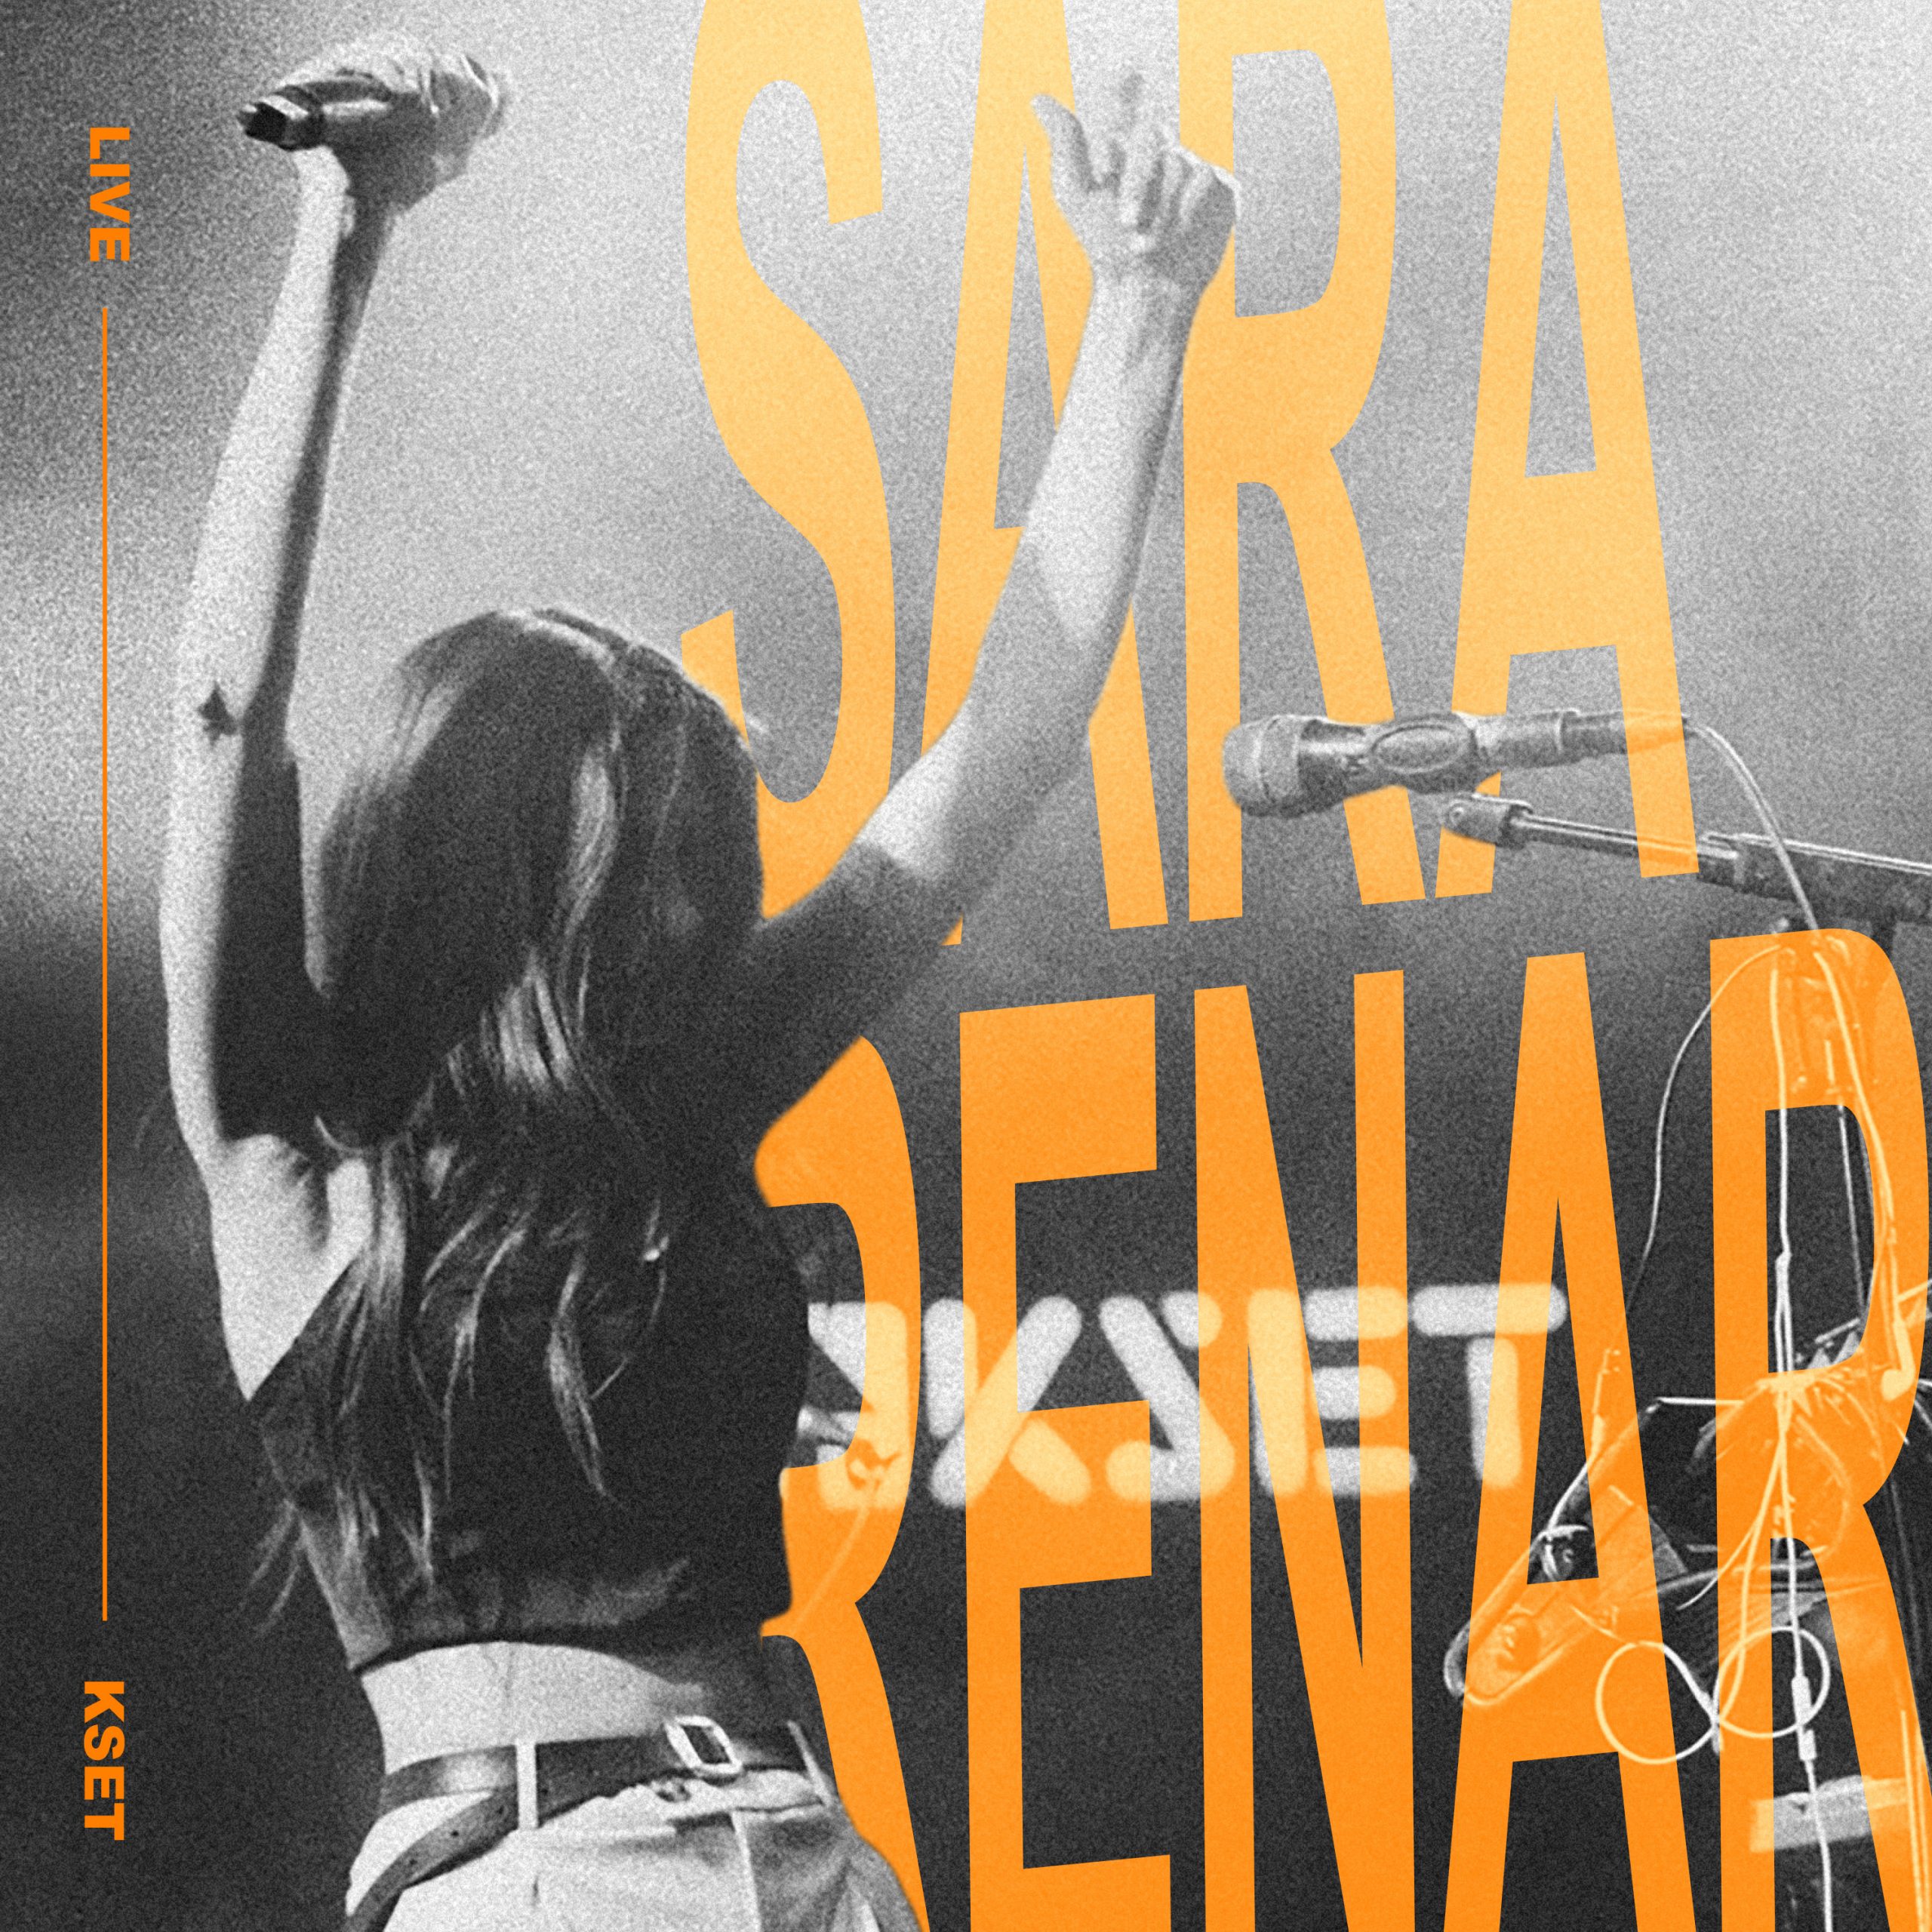 Sara Renar predstavlja novi singl i live album snimljen u KSET-u povodom 10 godina karijere